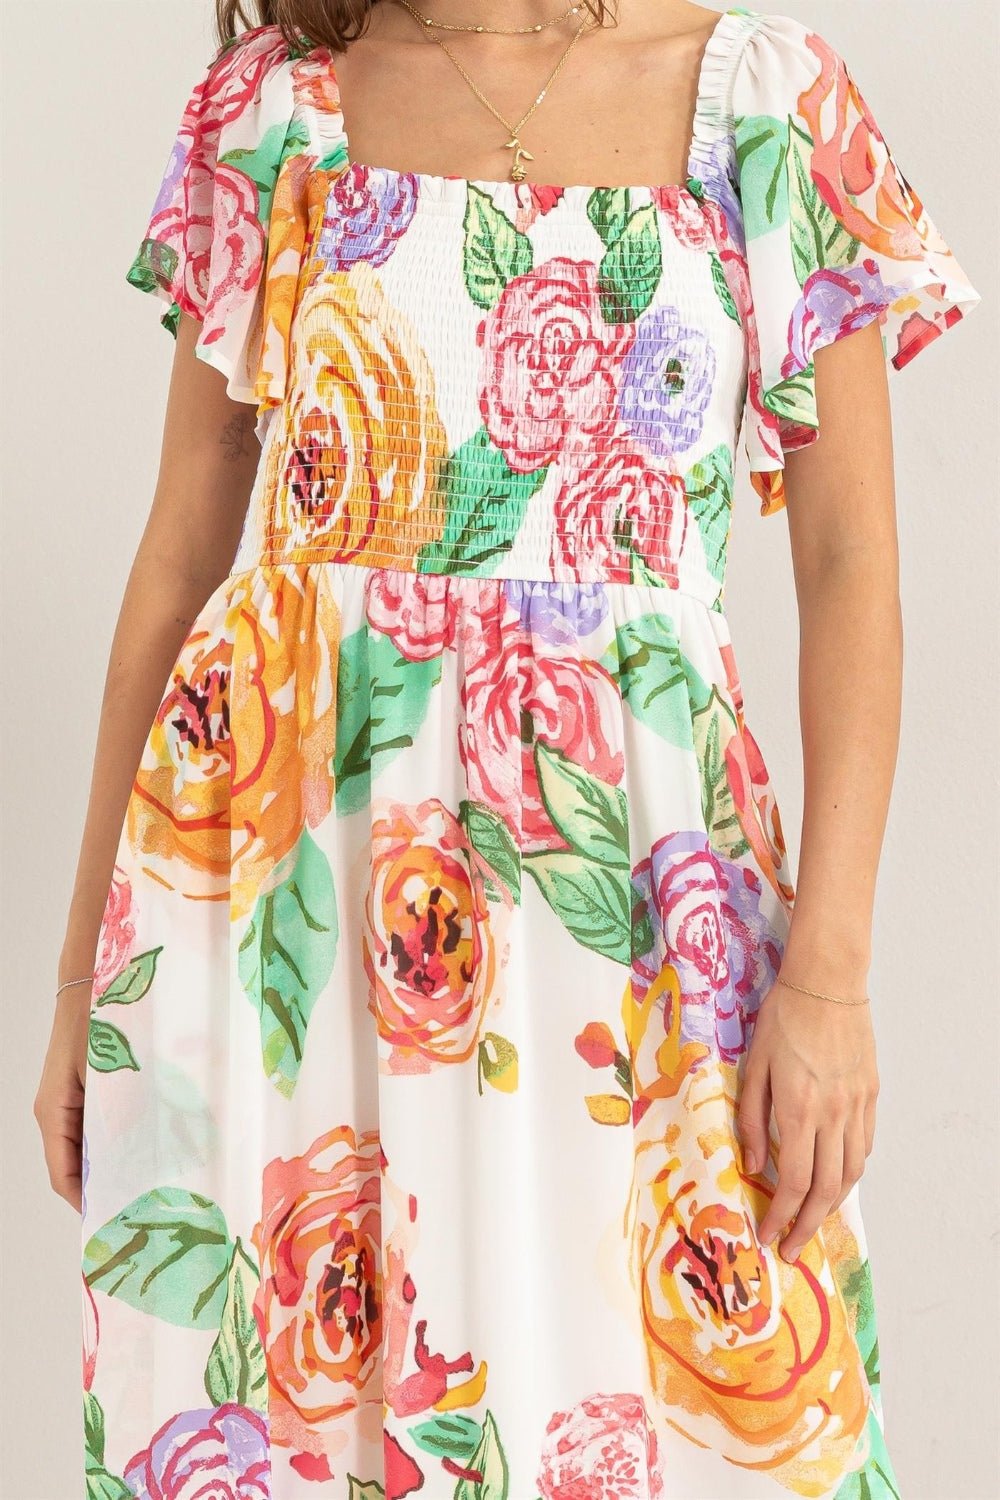 HYFVE Floral Flutter Sleeve Smocked Dress - Happily Ever Atchison Shop Co.